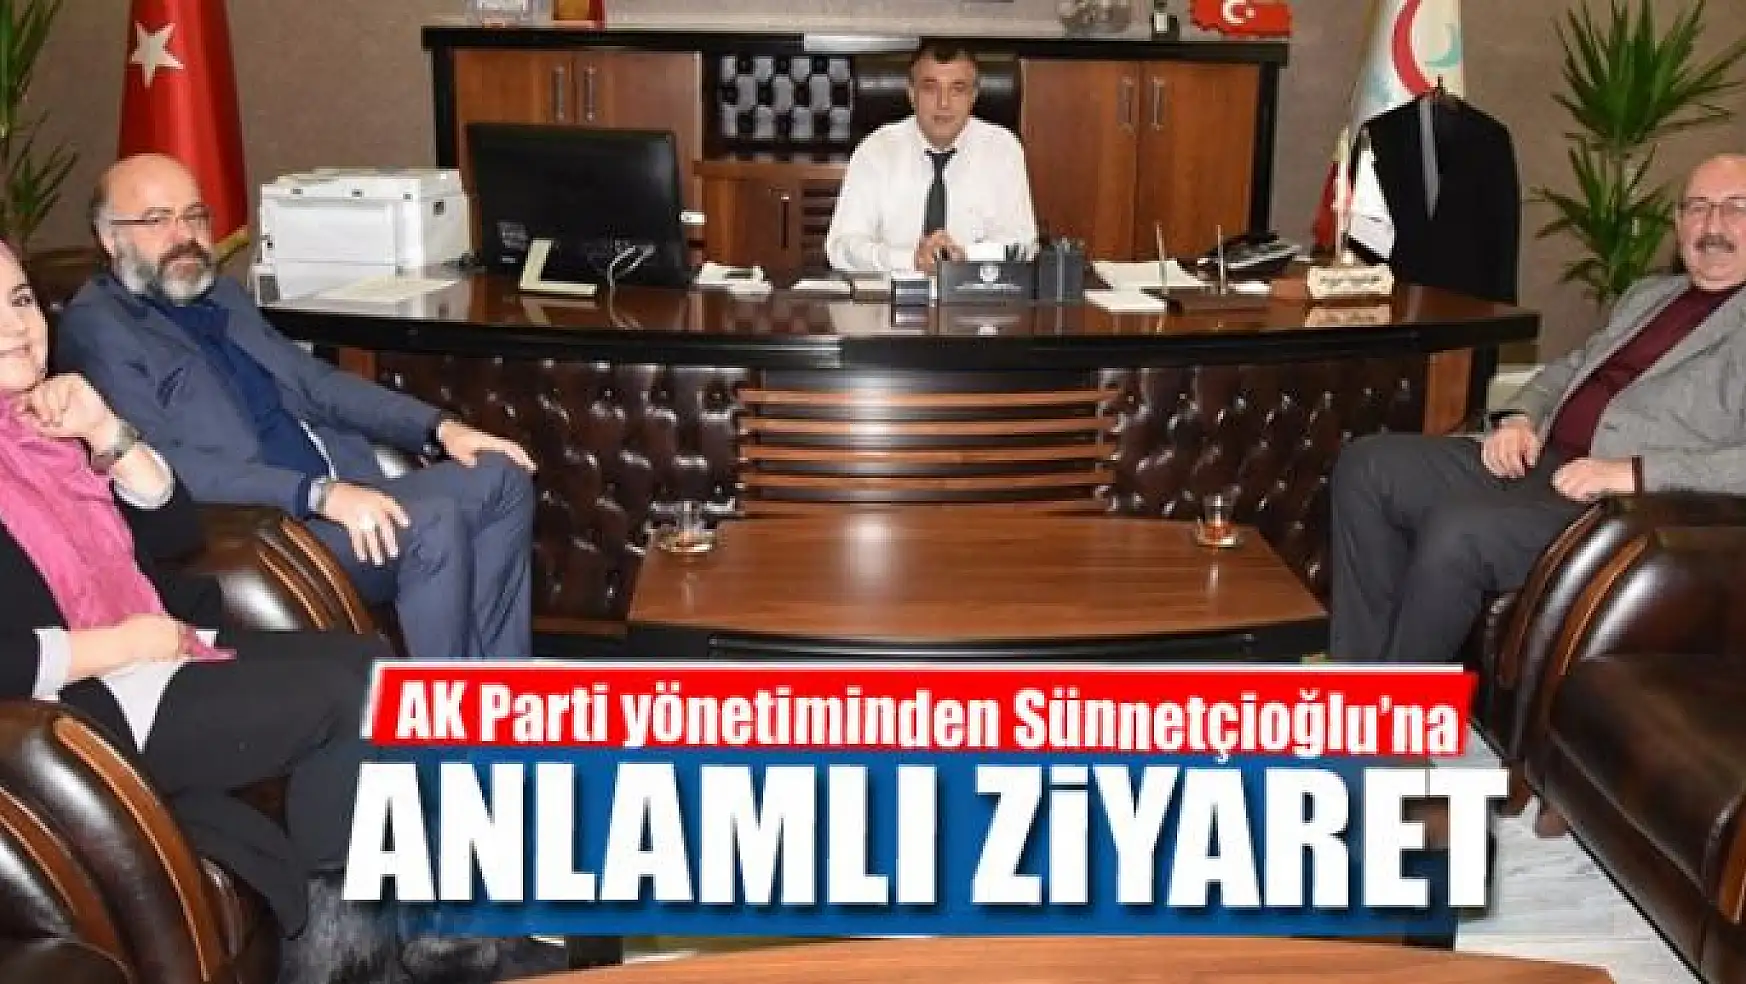 AK Parti yönetiminden Sünnetçioğlu'na ziyaret 